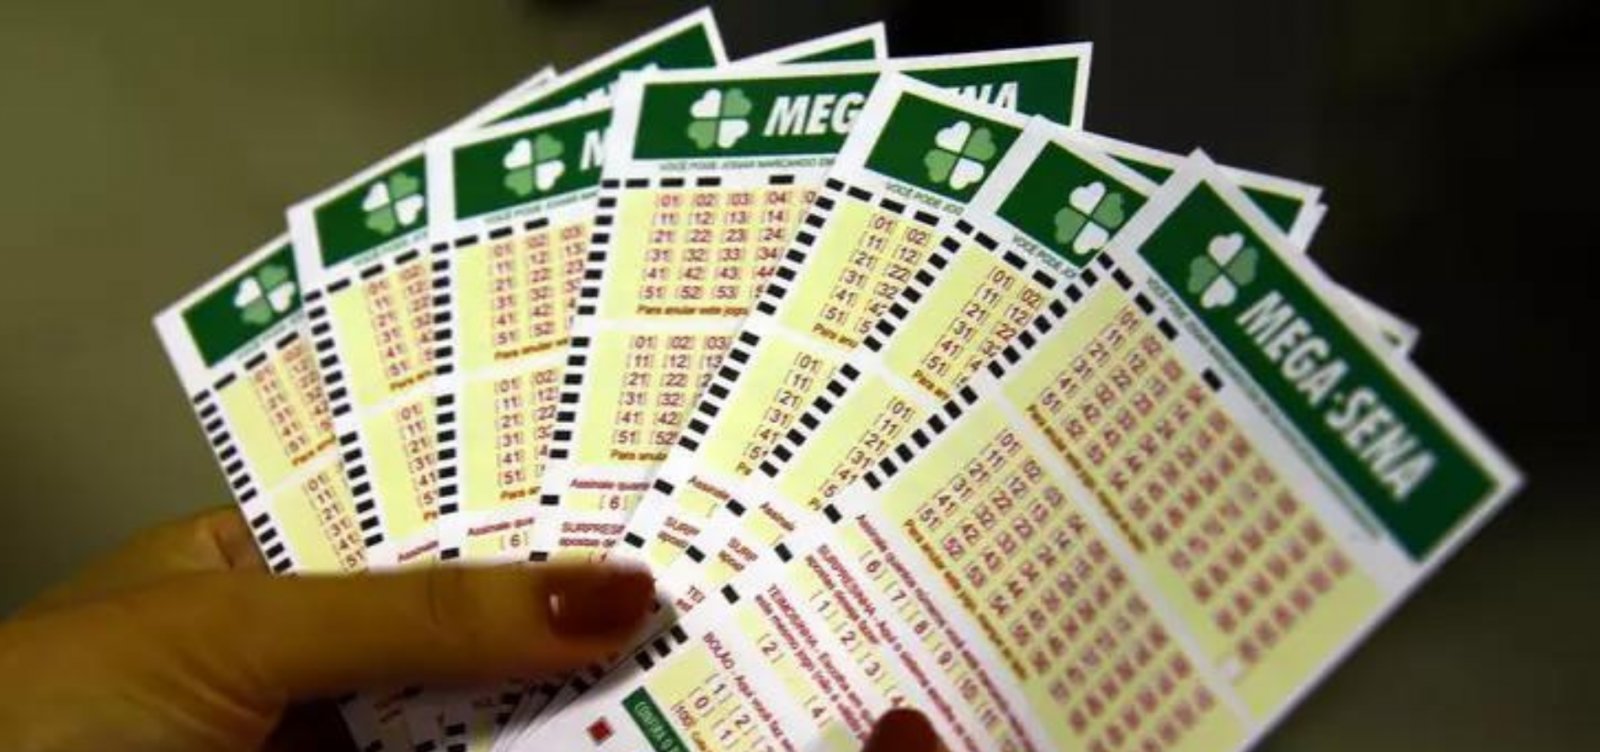 Mega-Sena: prêmio acumula e próximo sorteio vai a R$ 10,5 milhões